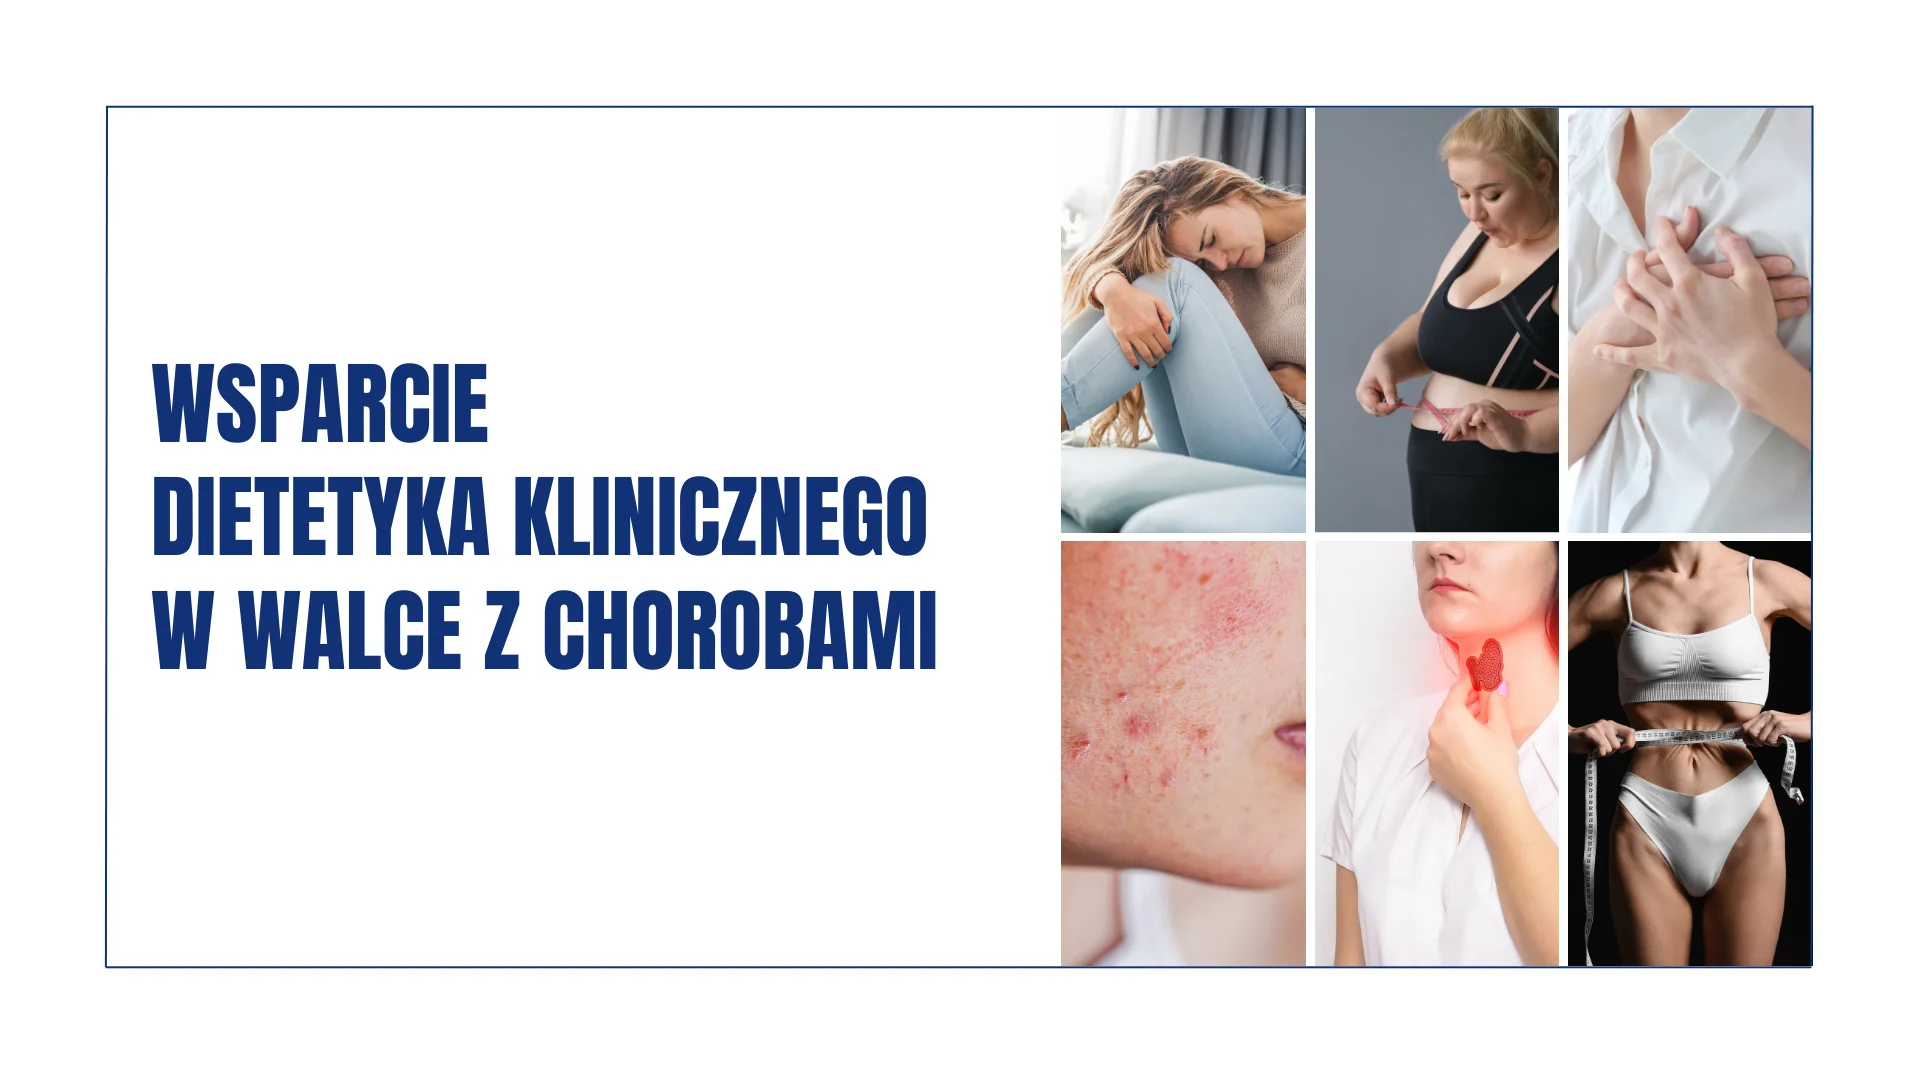 CKR - Rehabilitacja - Mgr Justyna Rudzińska – dietetyk kliniczny w CKR